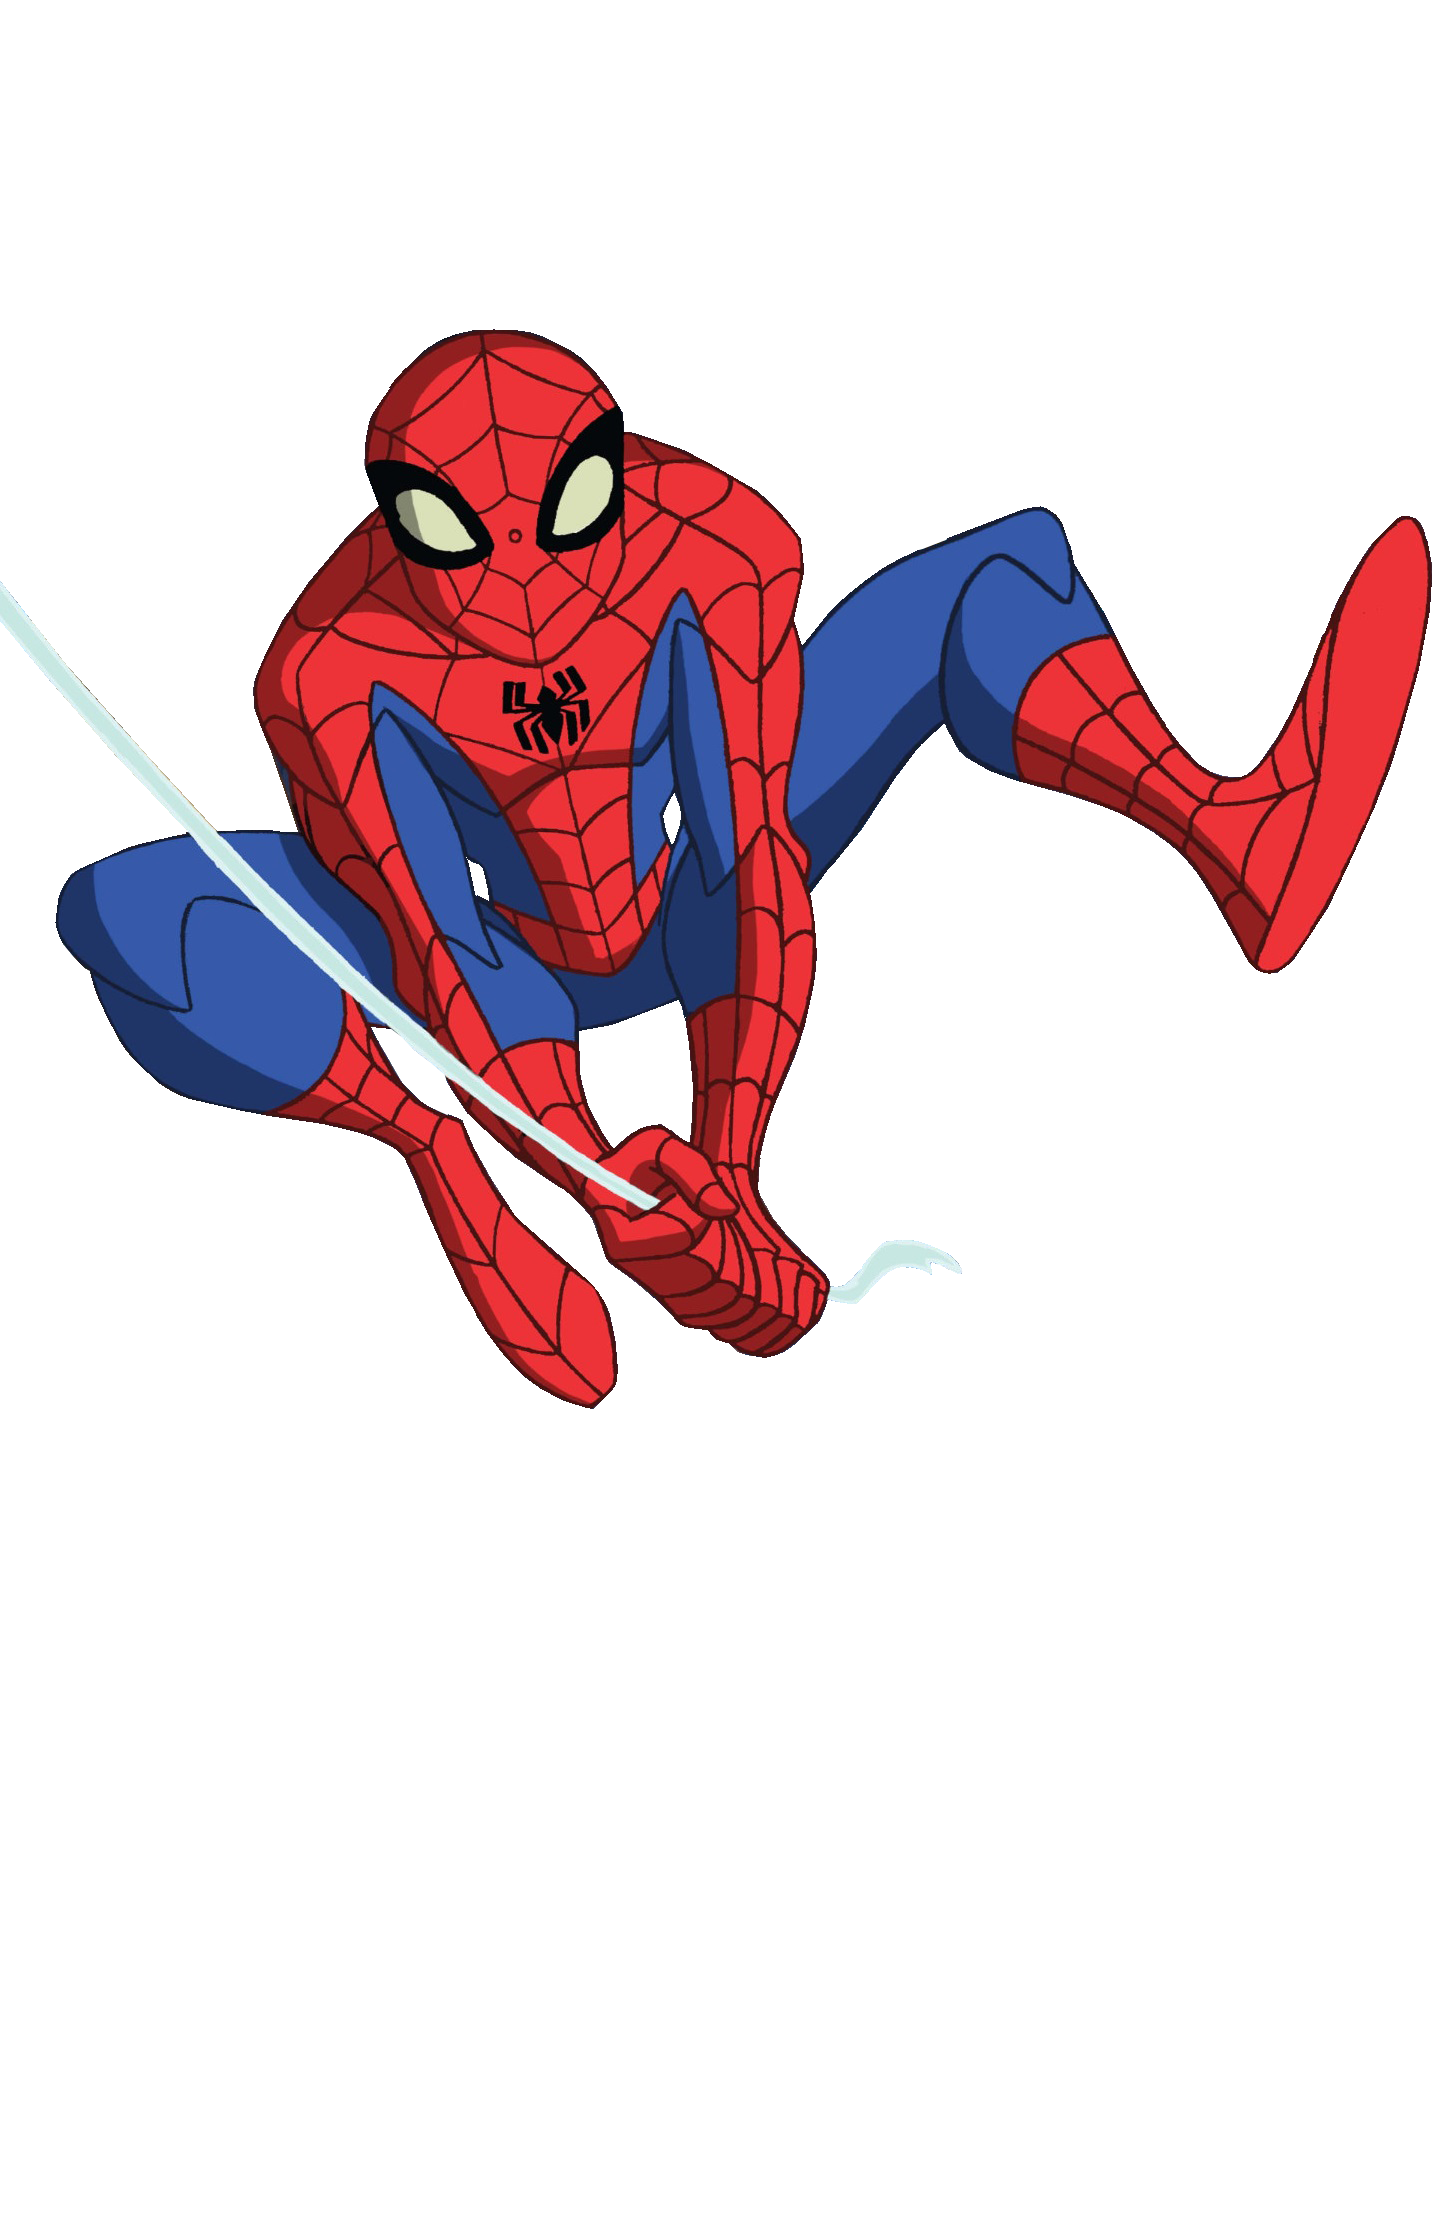 Spectacular Spider-Man Render by Techno3456 on DeviantArt